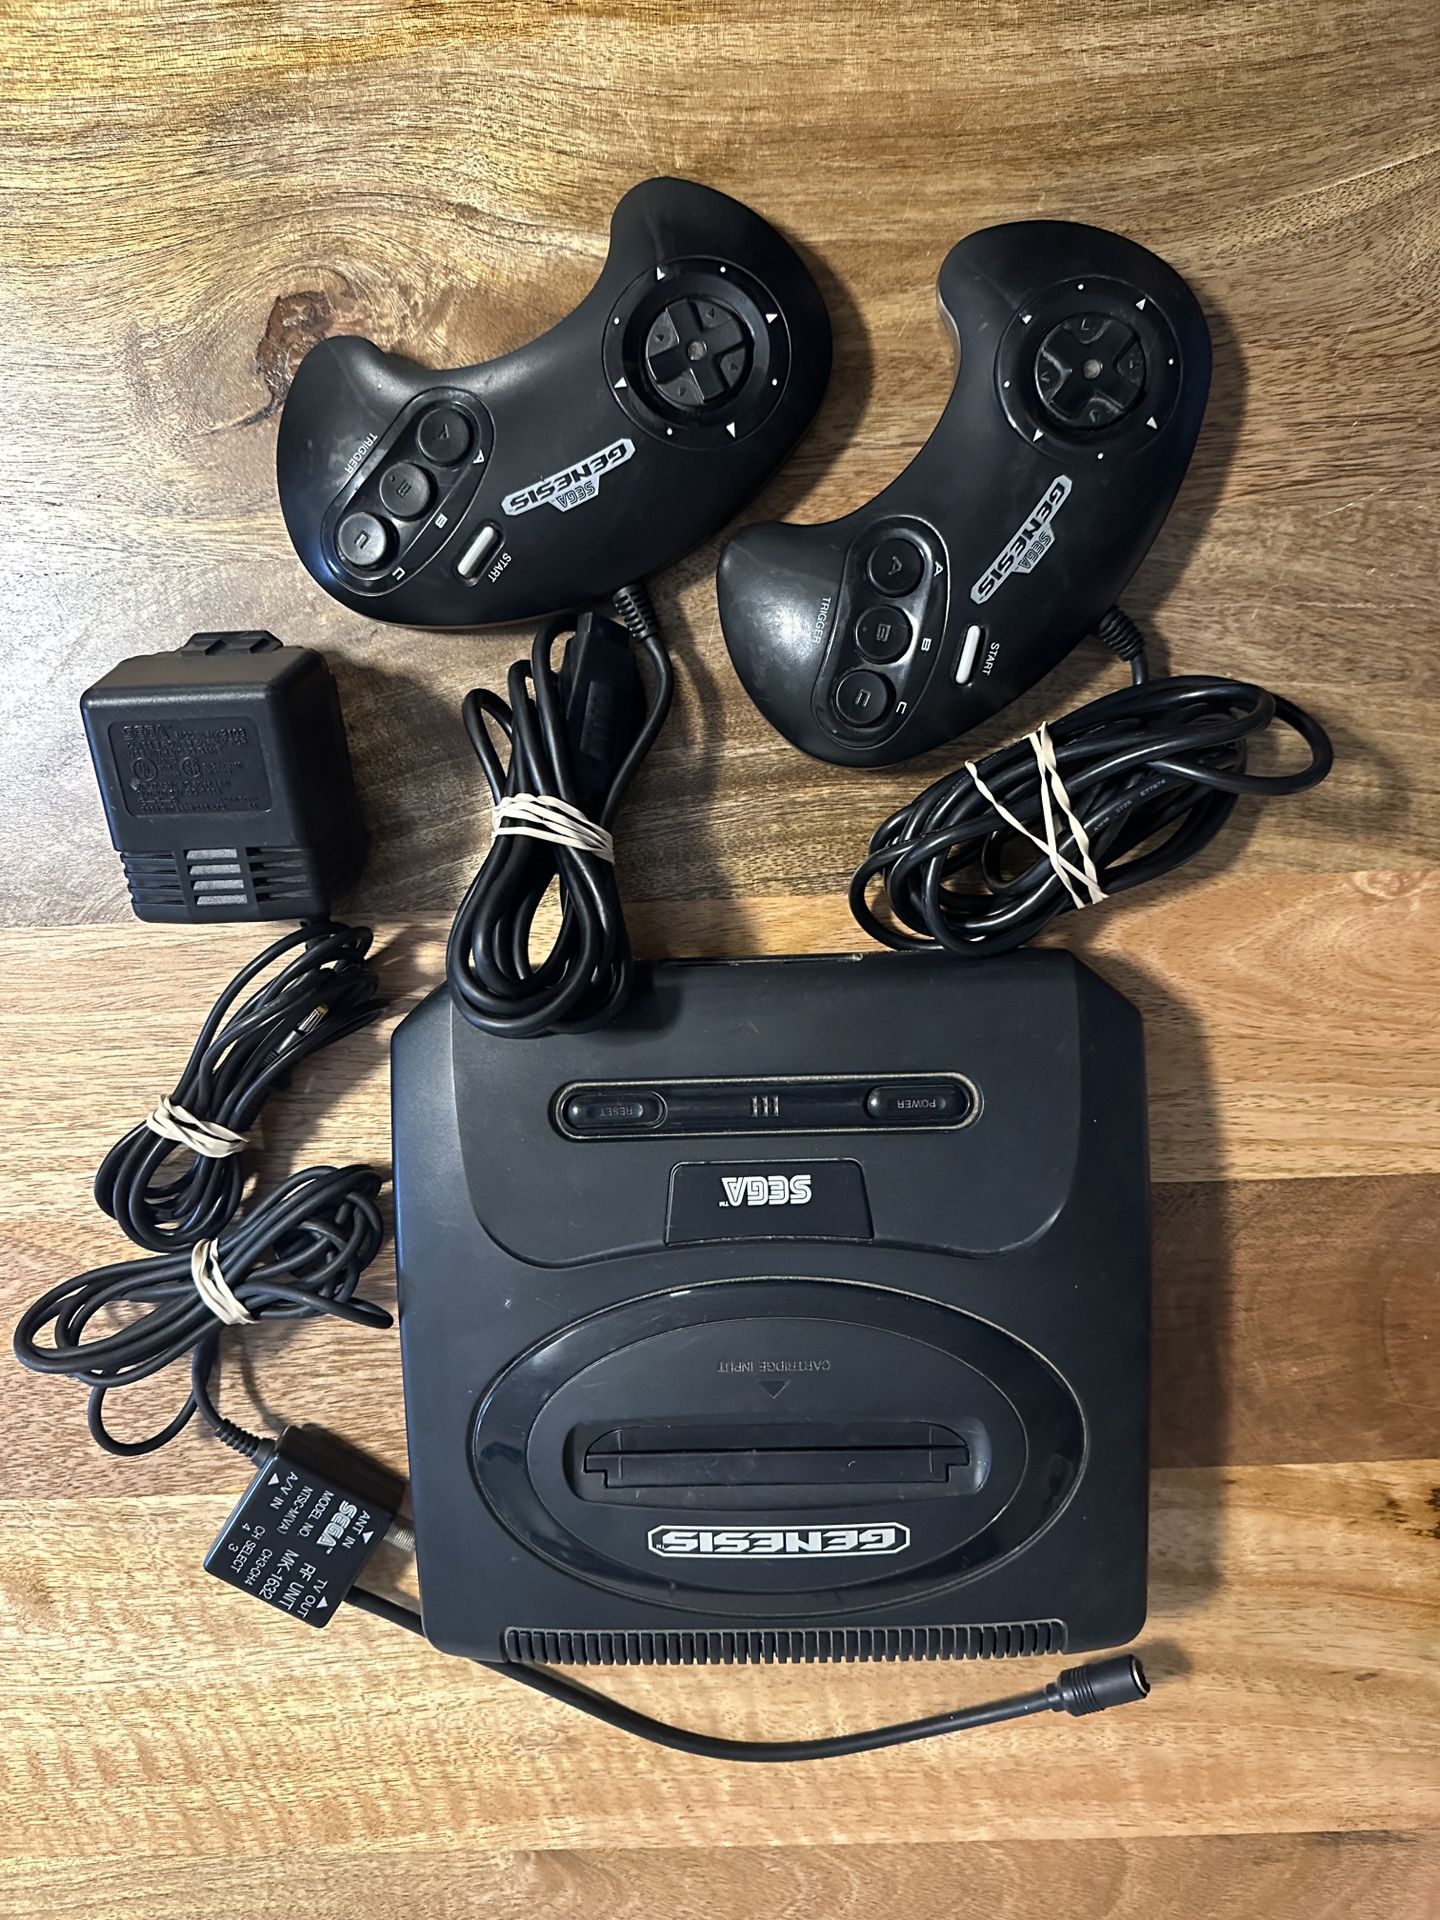 Sega Genesis With 2 Controllers